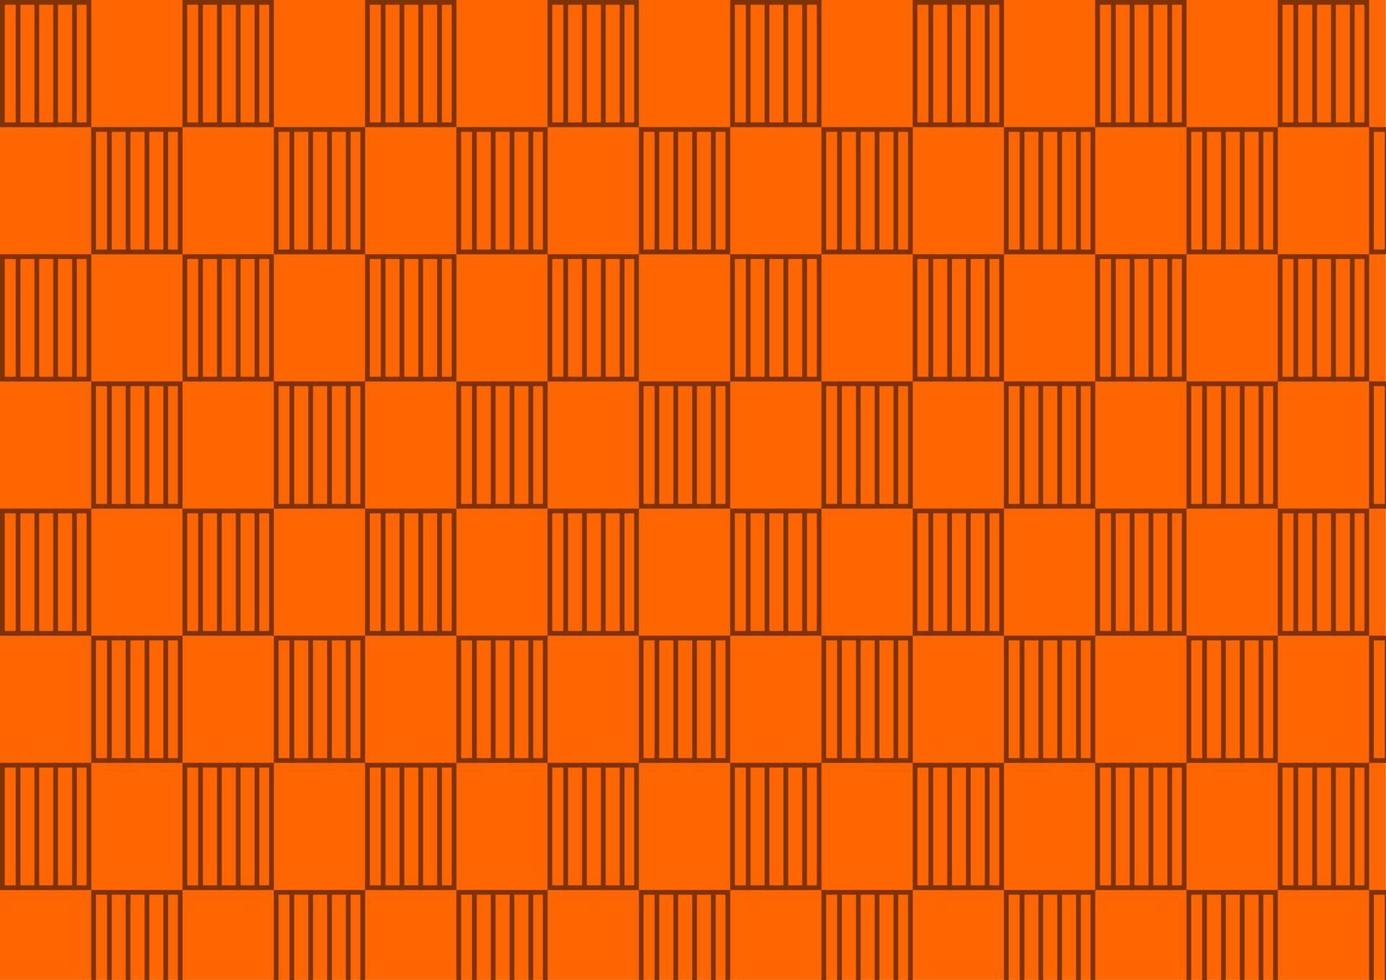 Square Tile Orange Pattern Wallpaper Background Design vector